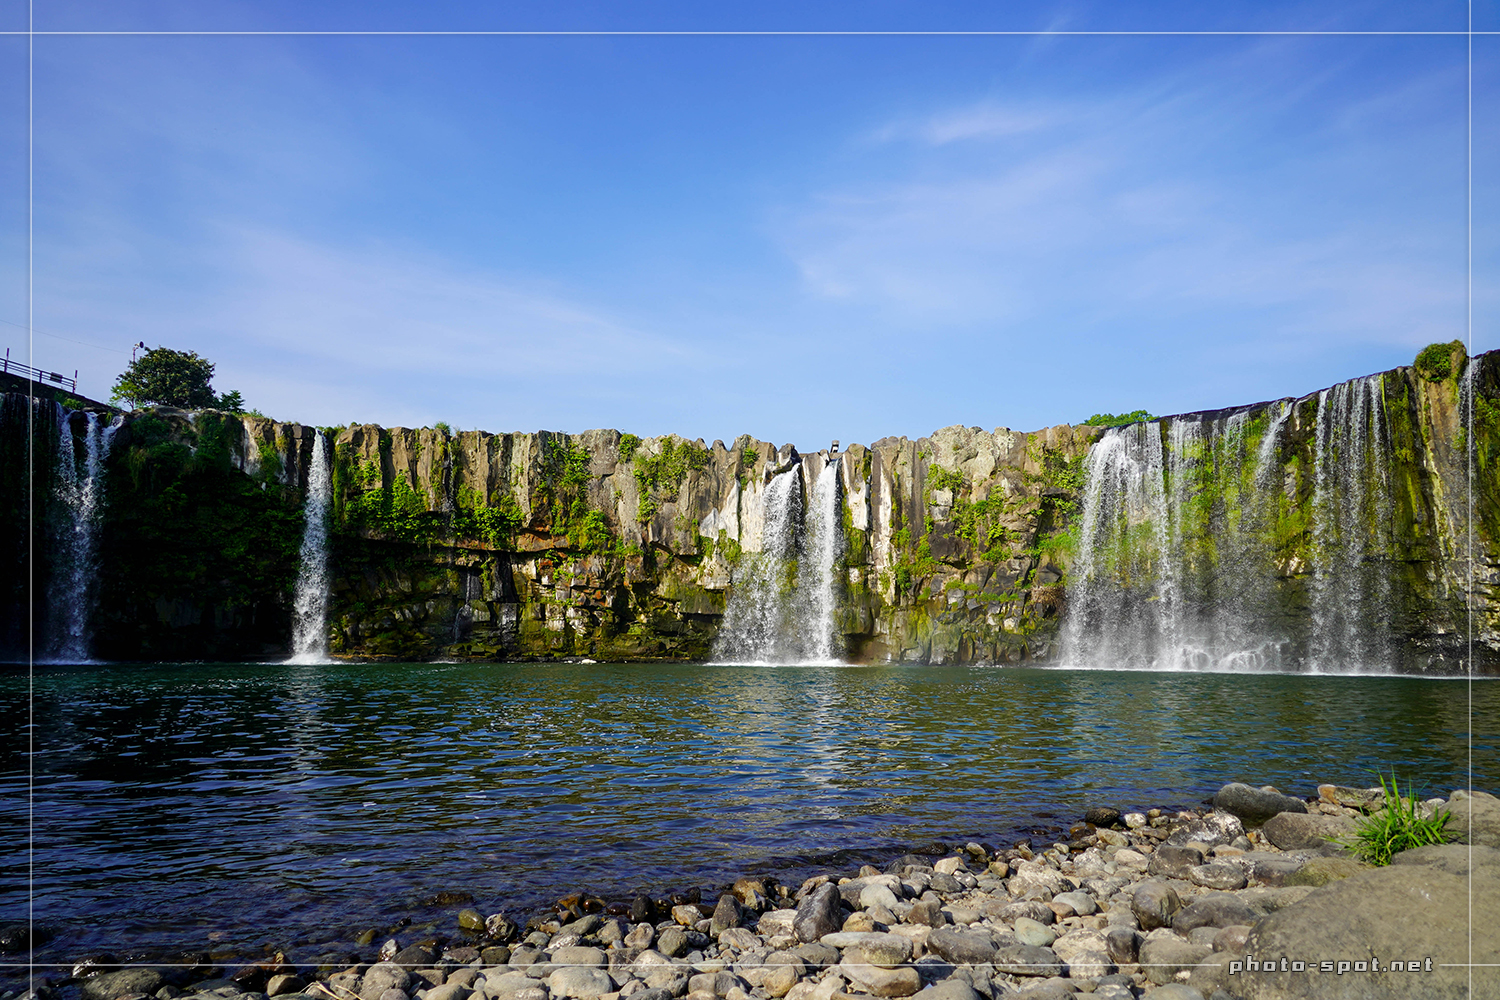 大分県の瀑布 東洋のナイアガラと呼ばれる原尻の滝